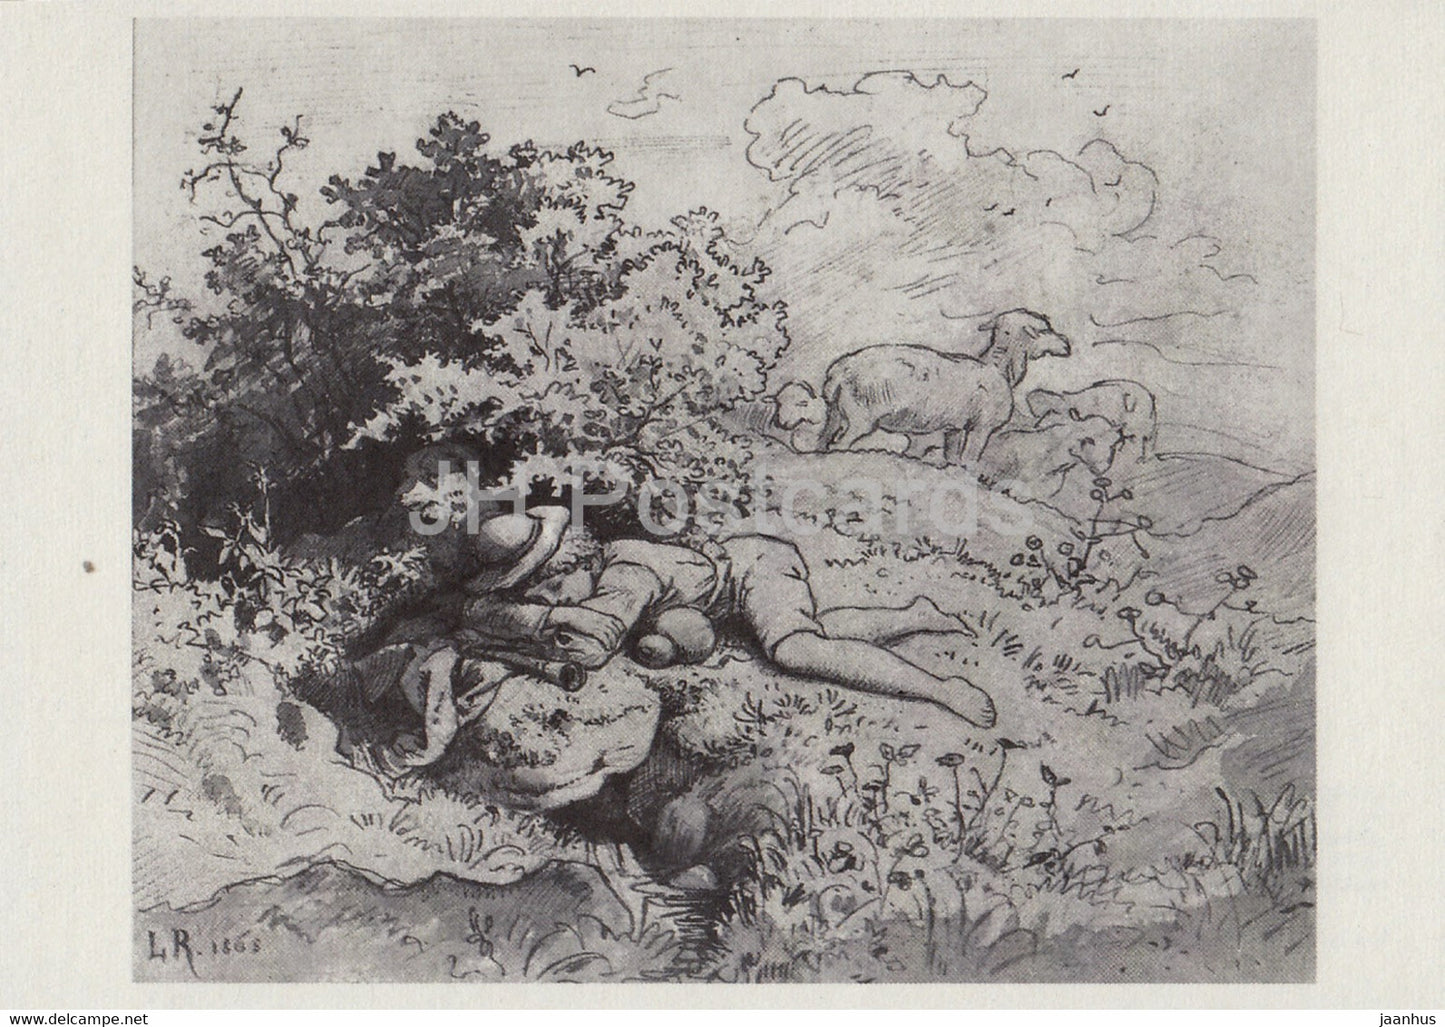 painting by Ludwig Richter - Der Hirtenknabe - shepherd boy - sheep - German art - Germany - unused - JH Postcards